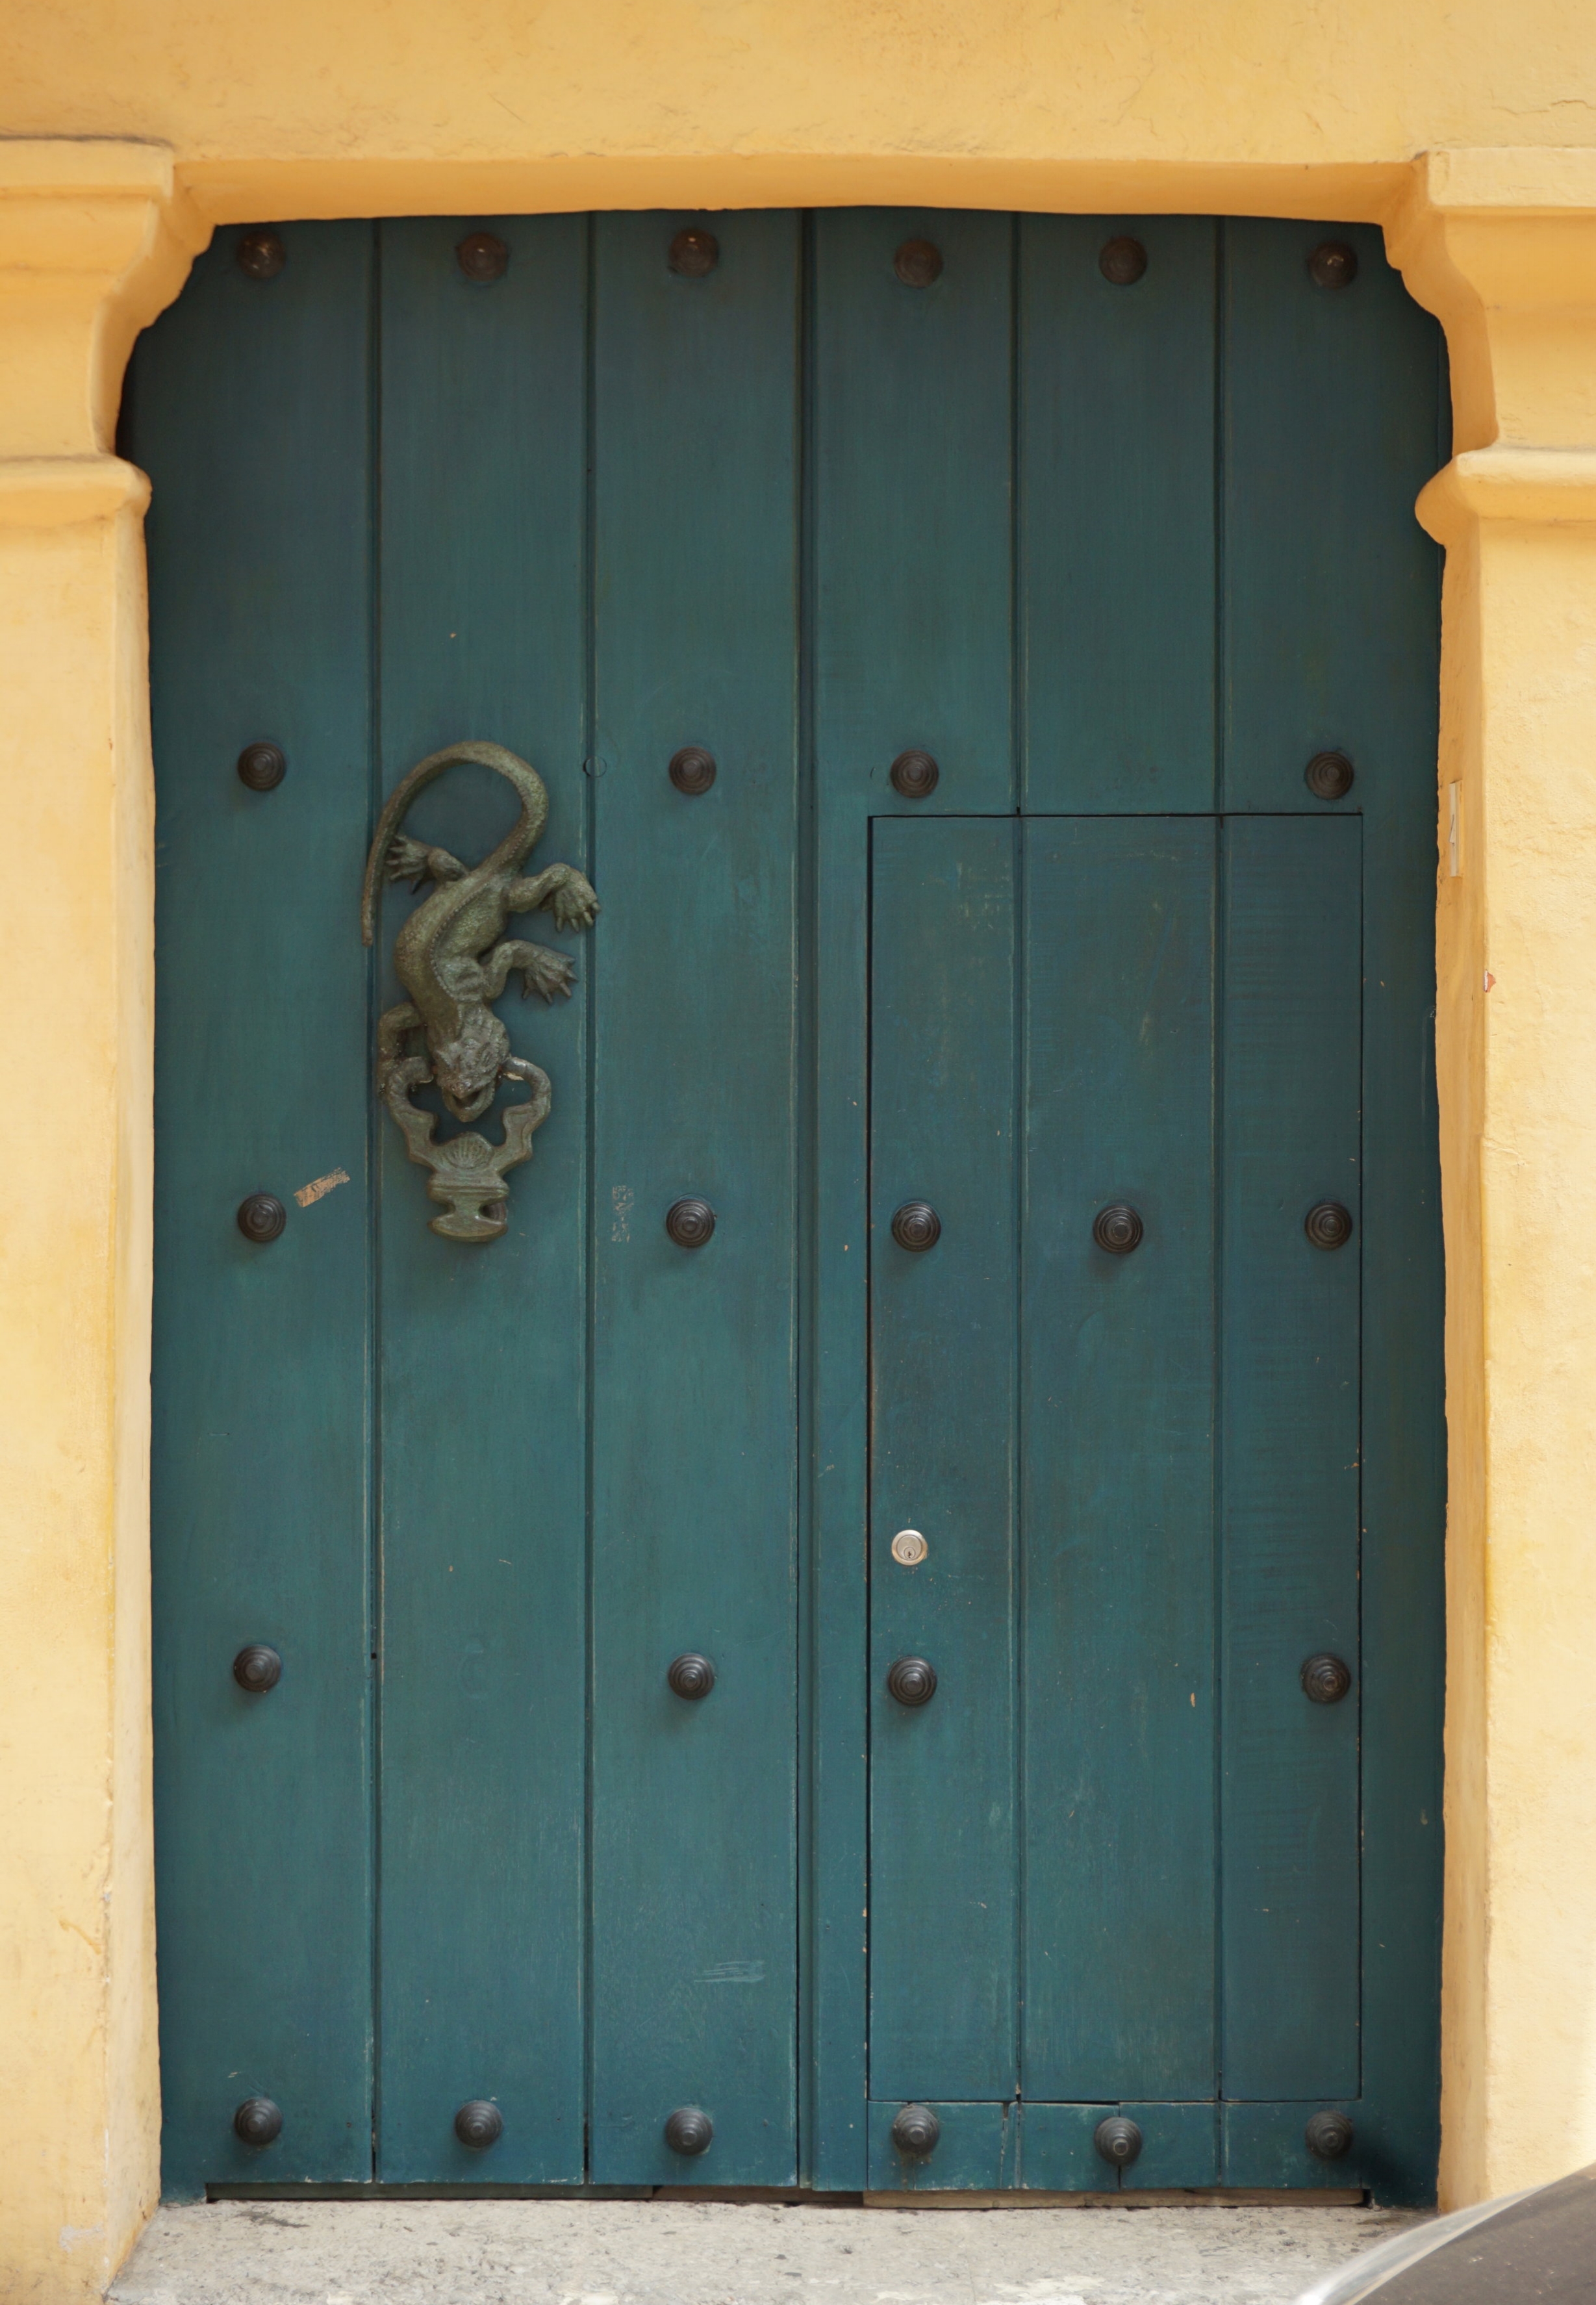 Spanish-style teal double door with a decorative door knocker